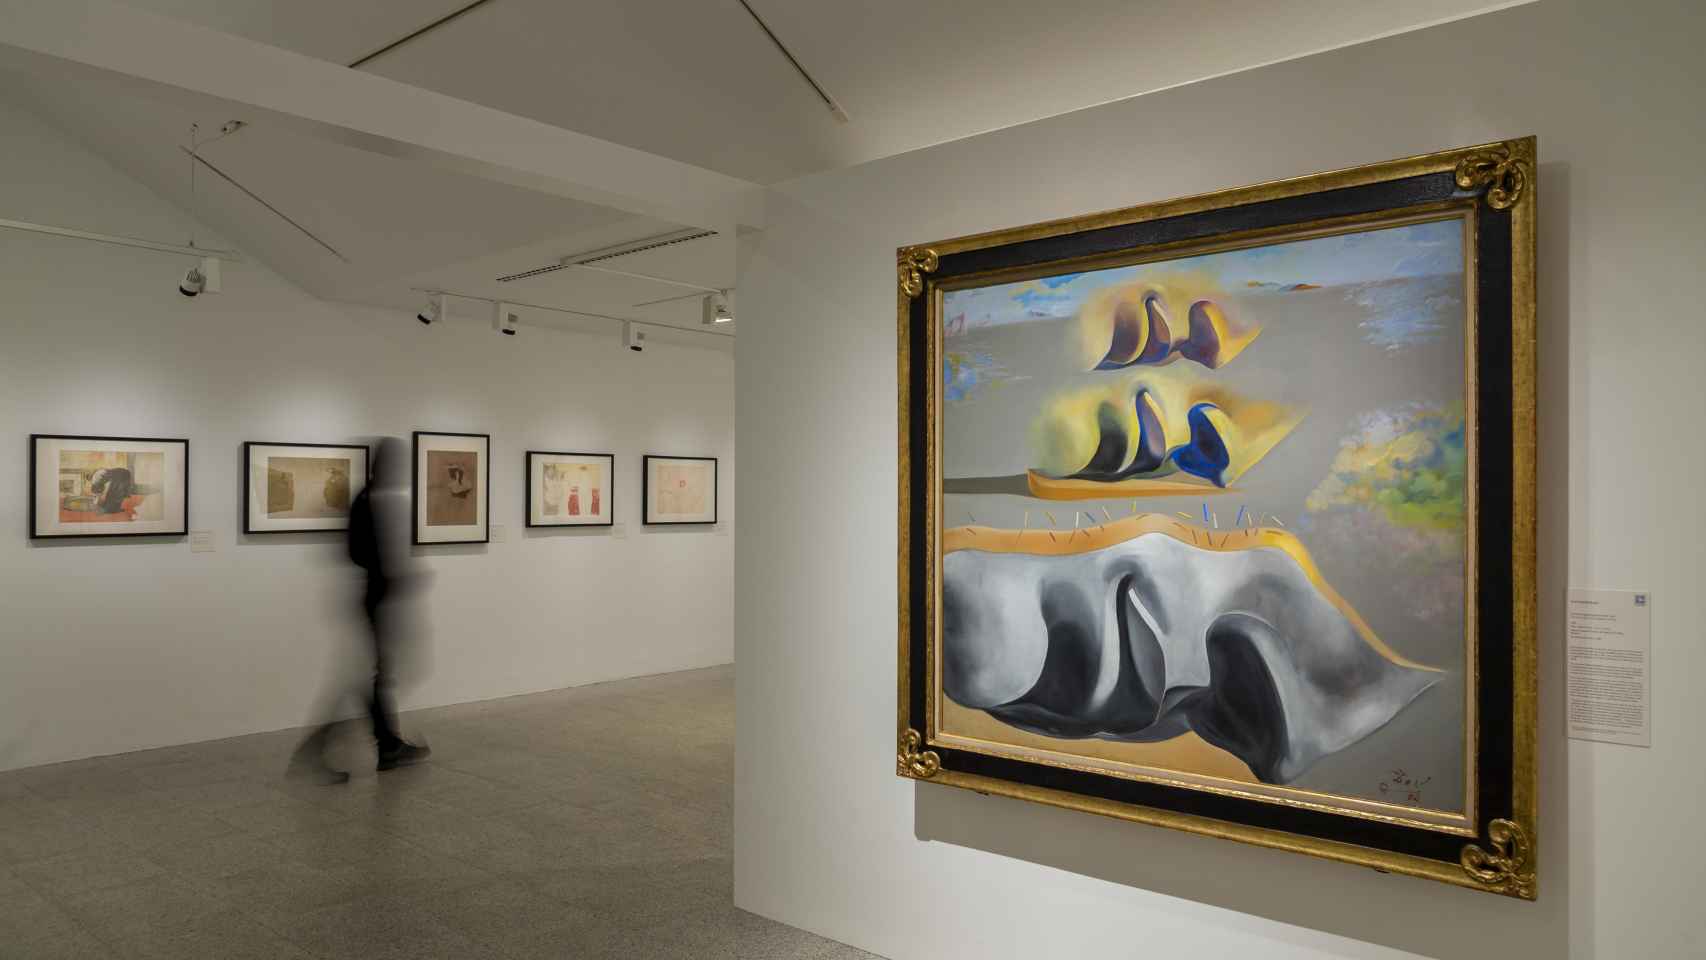 Cuadro de Salvador Dalí en la exposición 'Artistas y modelos' en la Fundación Canal.